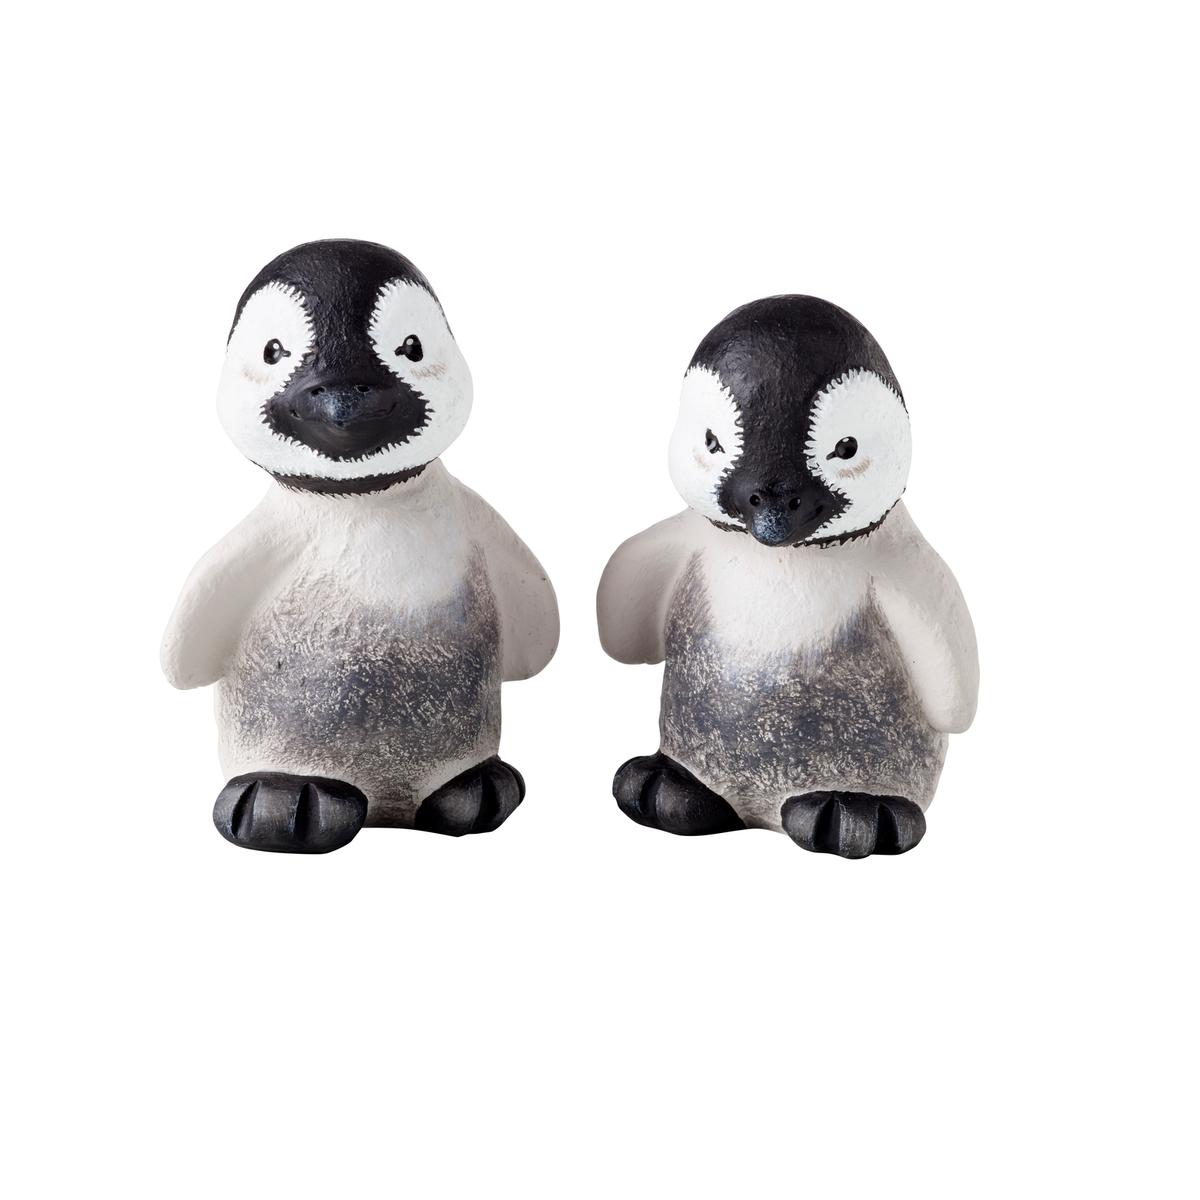 Pingo & Pjevs Babypingviner